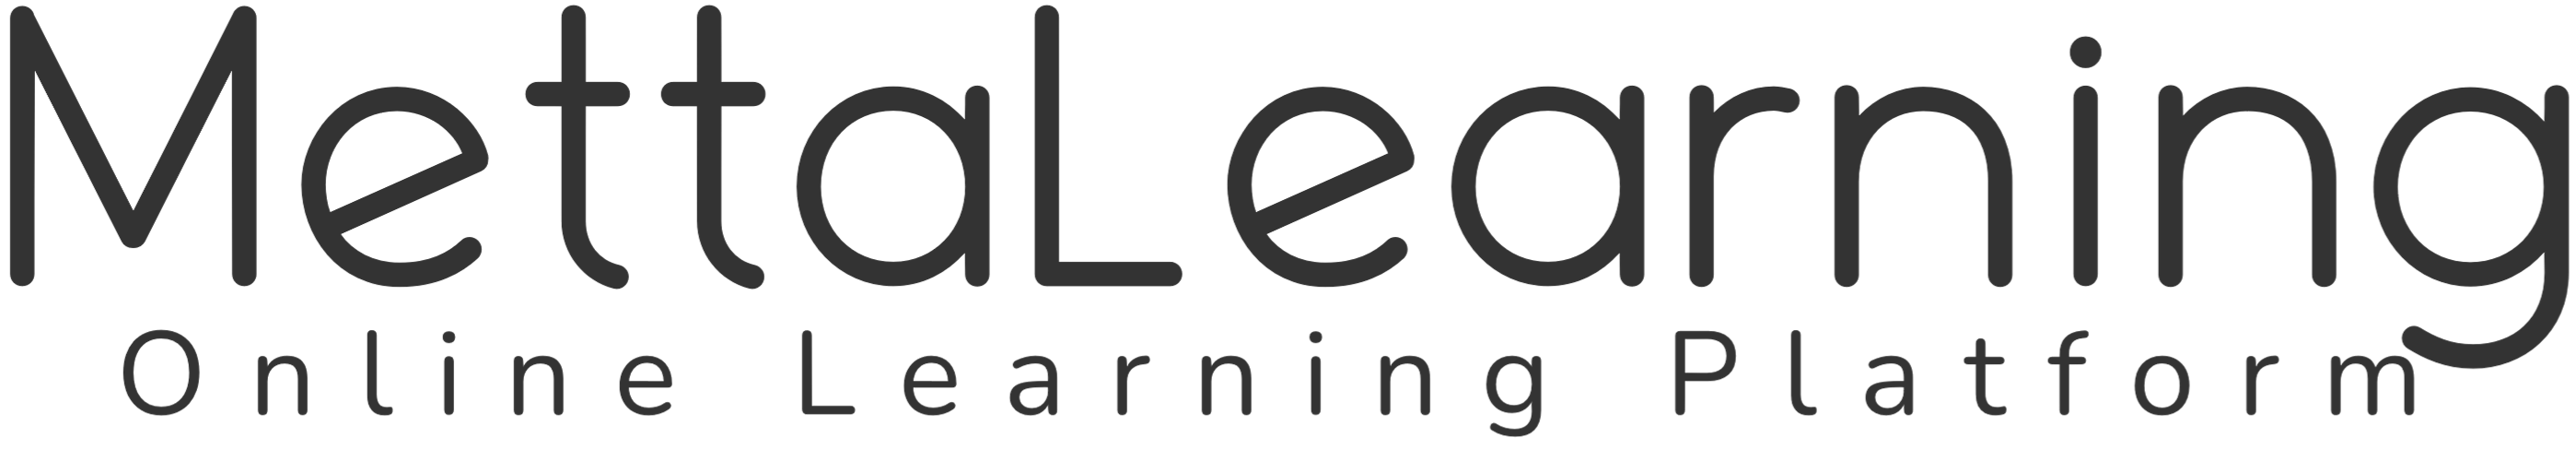 MettaLearning – Online Learning Platform